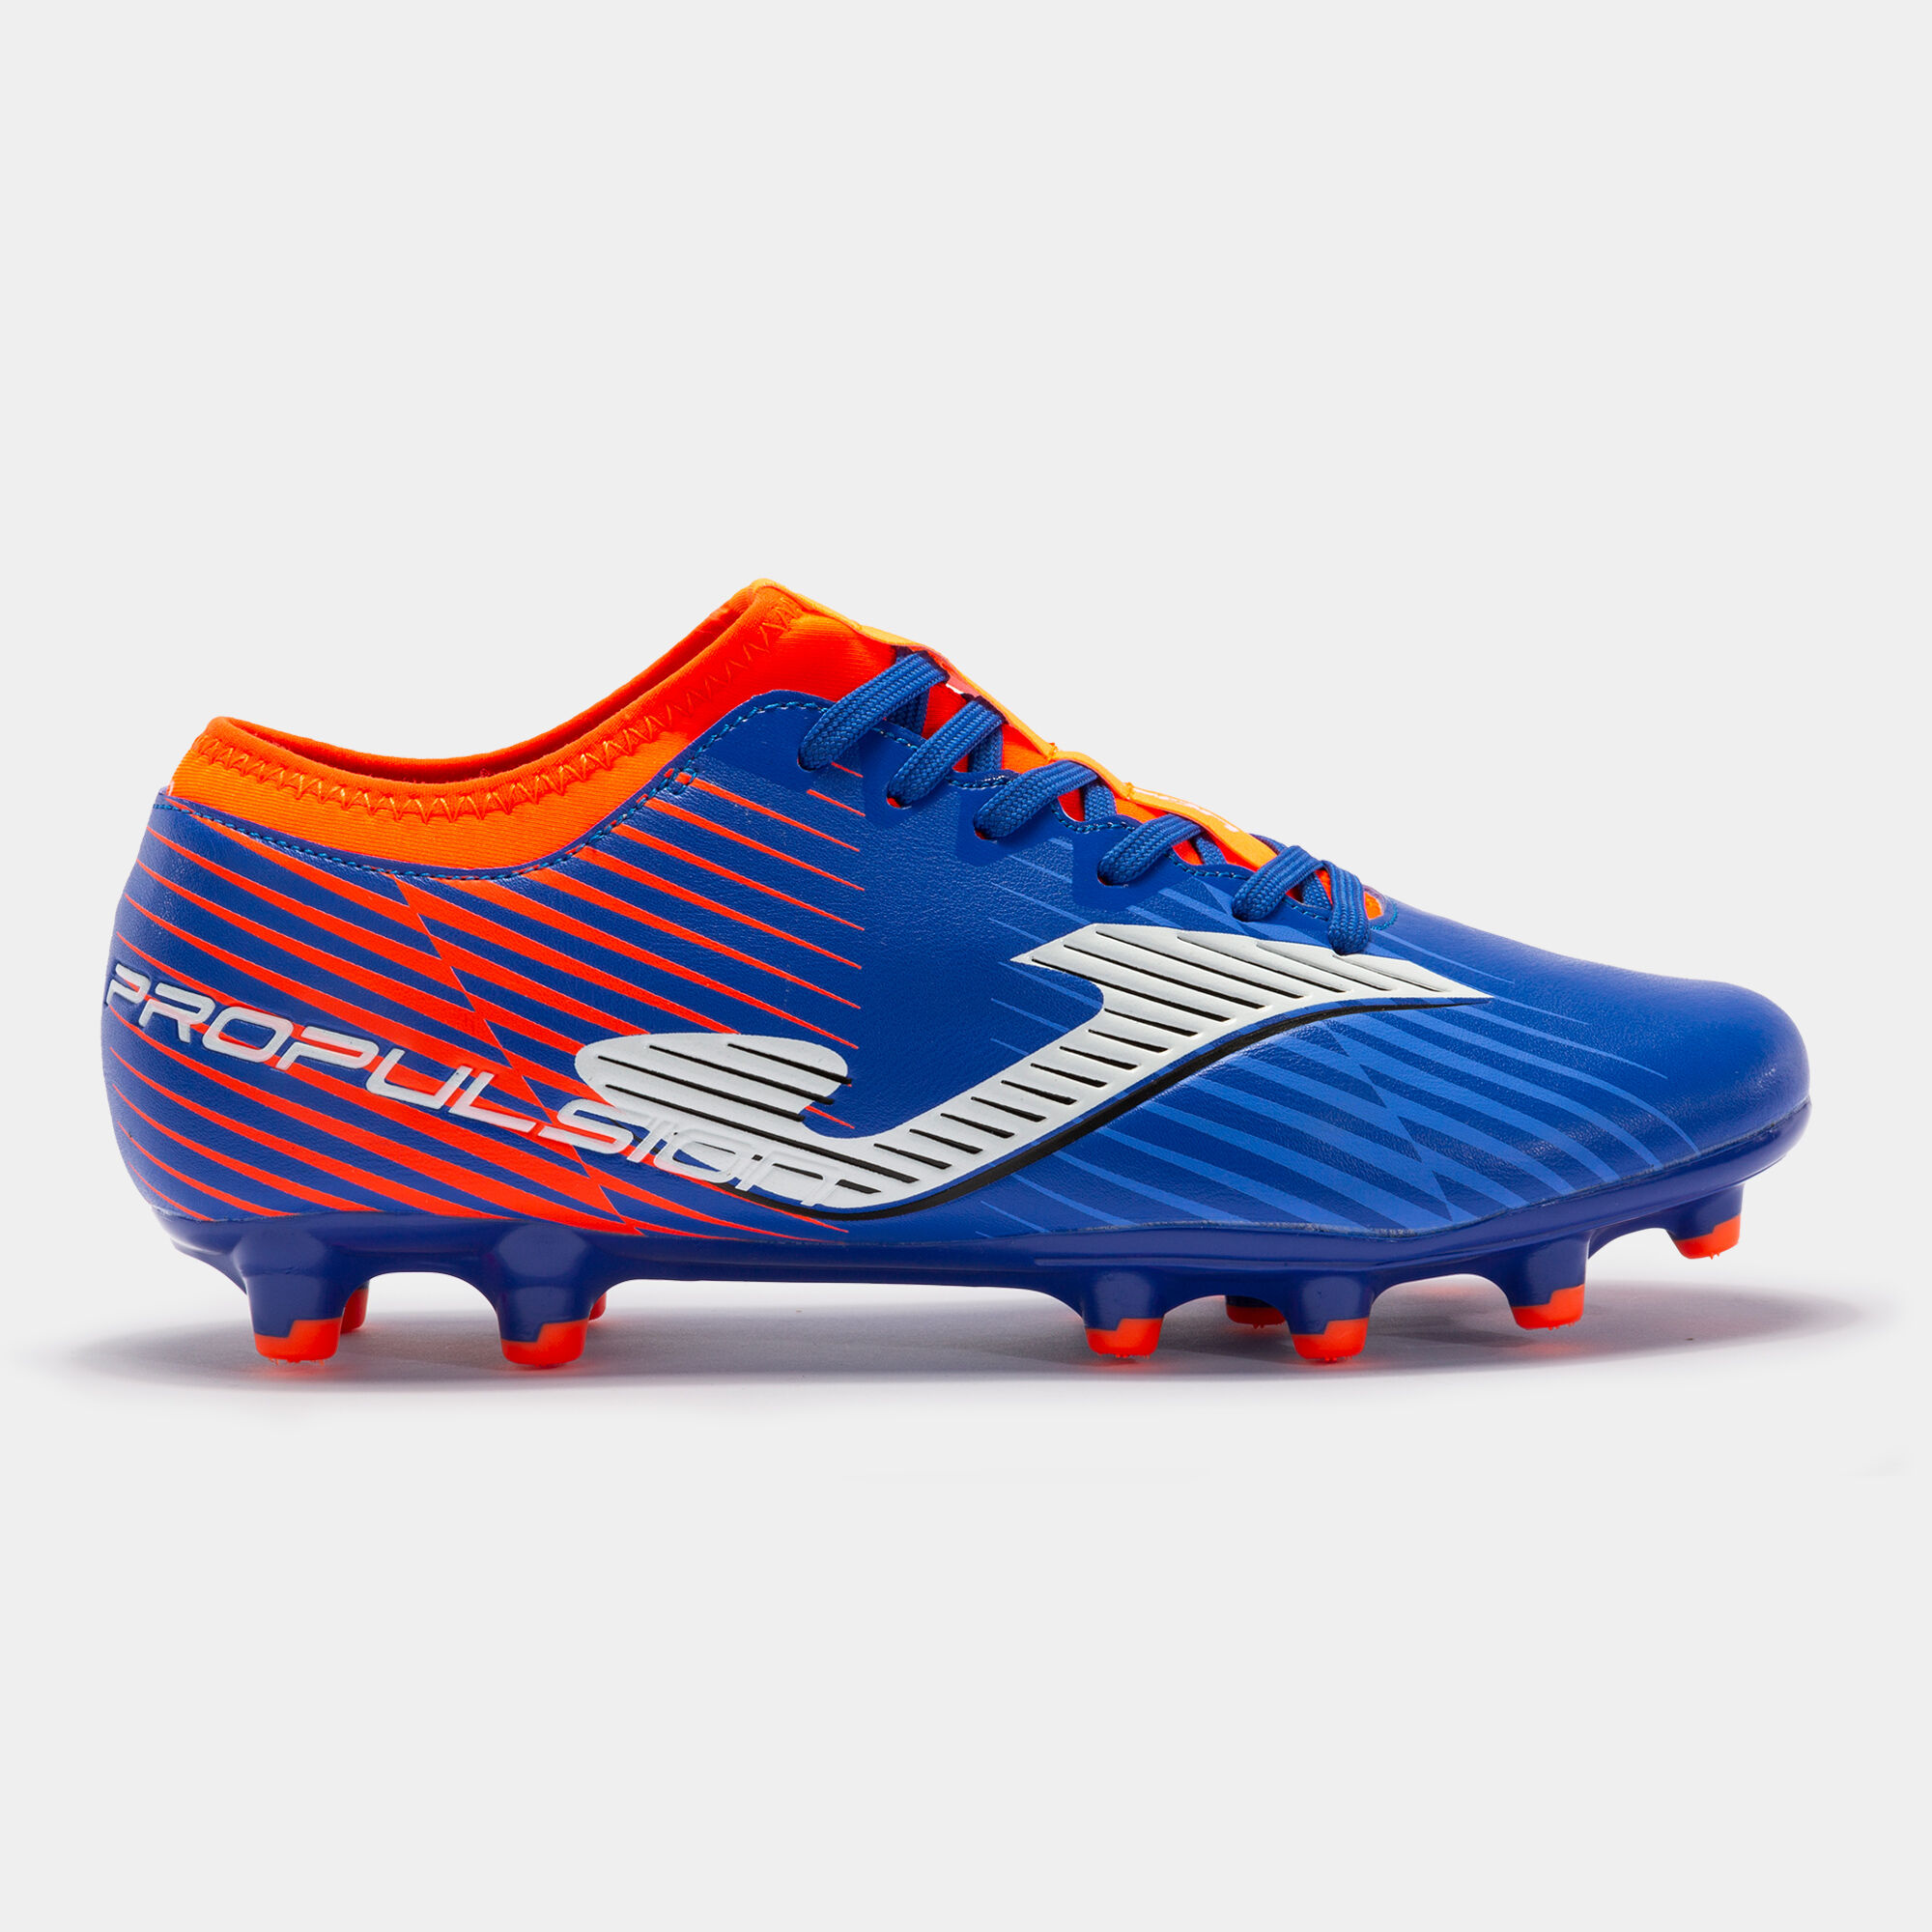 Buty piłkarskie Propulsion Cup 23 utwardzony grunt FG niebieski royal fluorescencyjny pomaranczowy